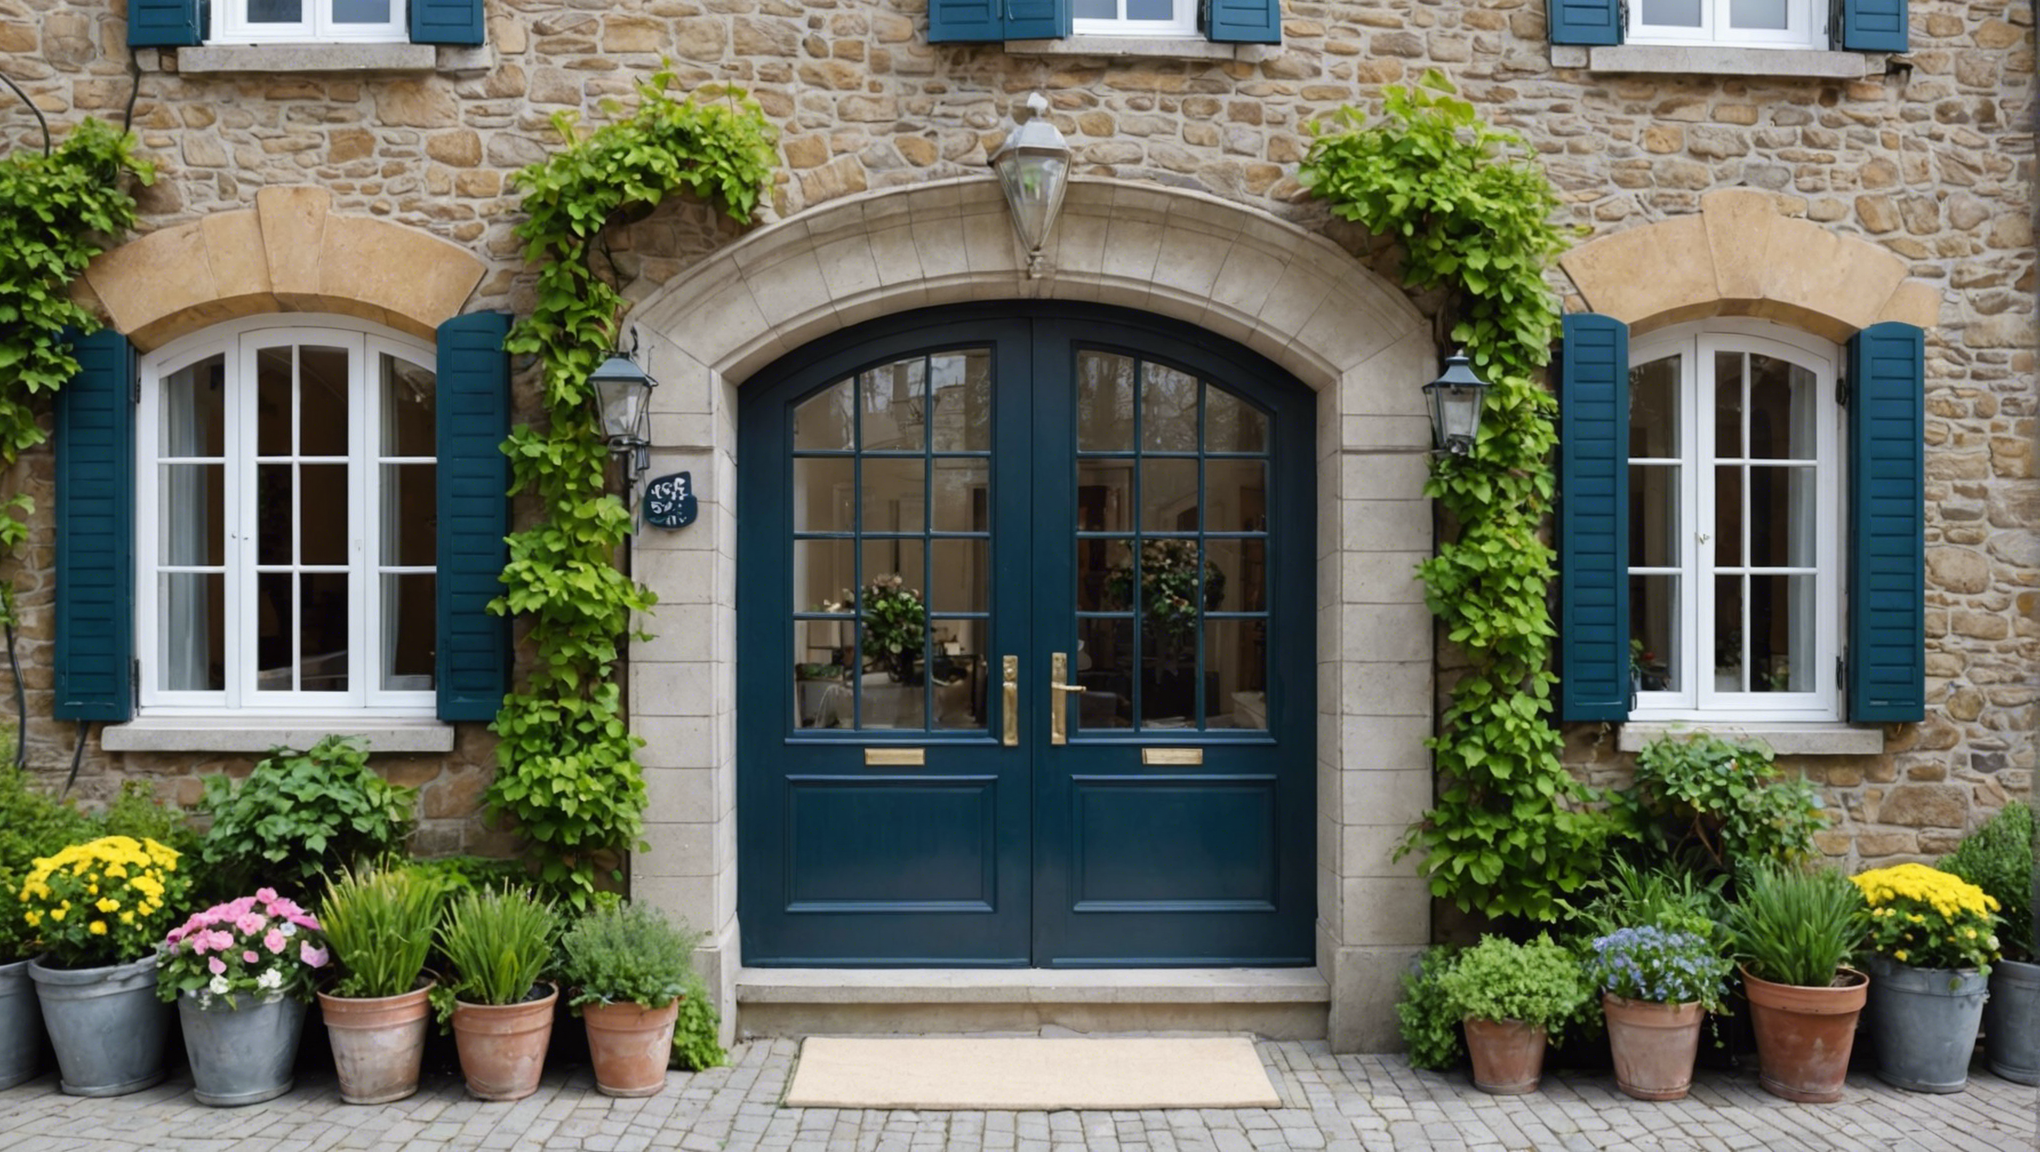 découvrez nos conseils pour choisir la meilleure entrée pour le portail de votre maison et améliorer son esthétique et sa sécurité.